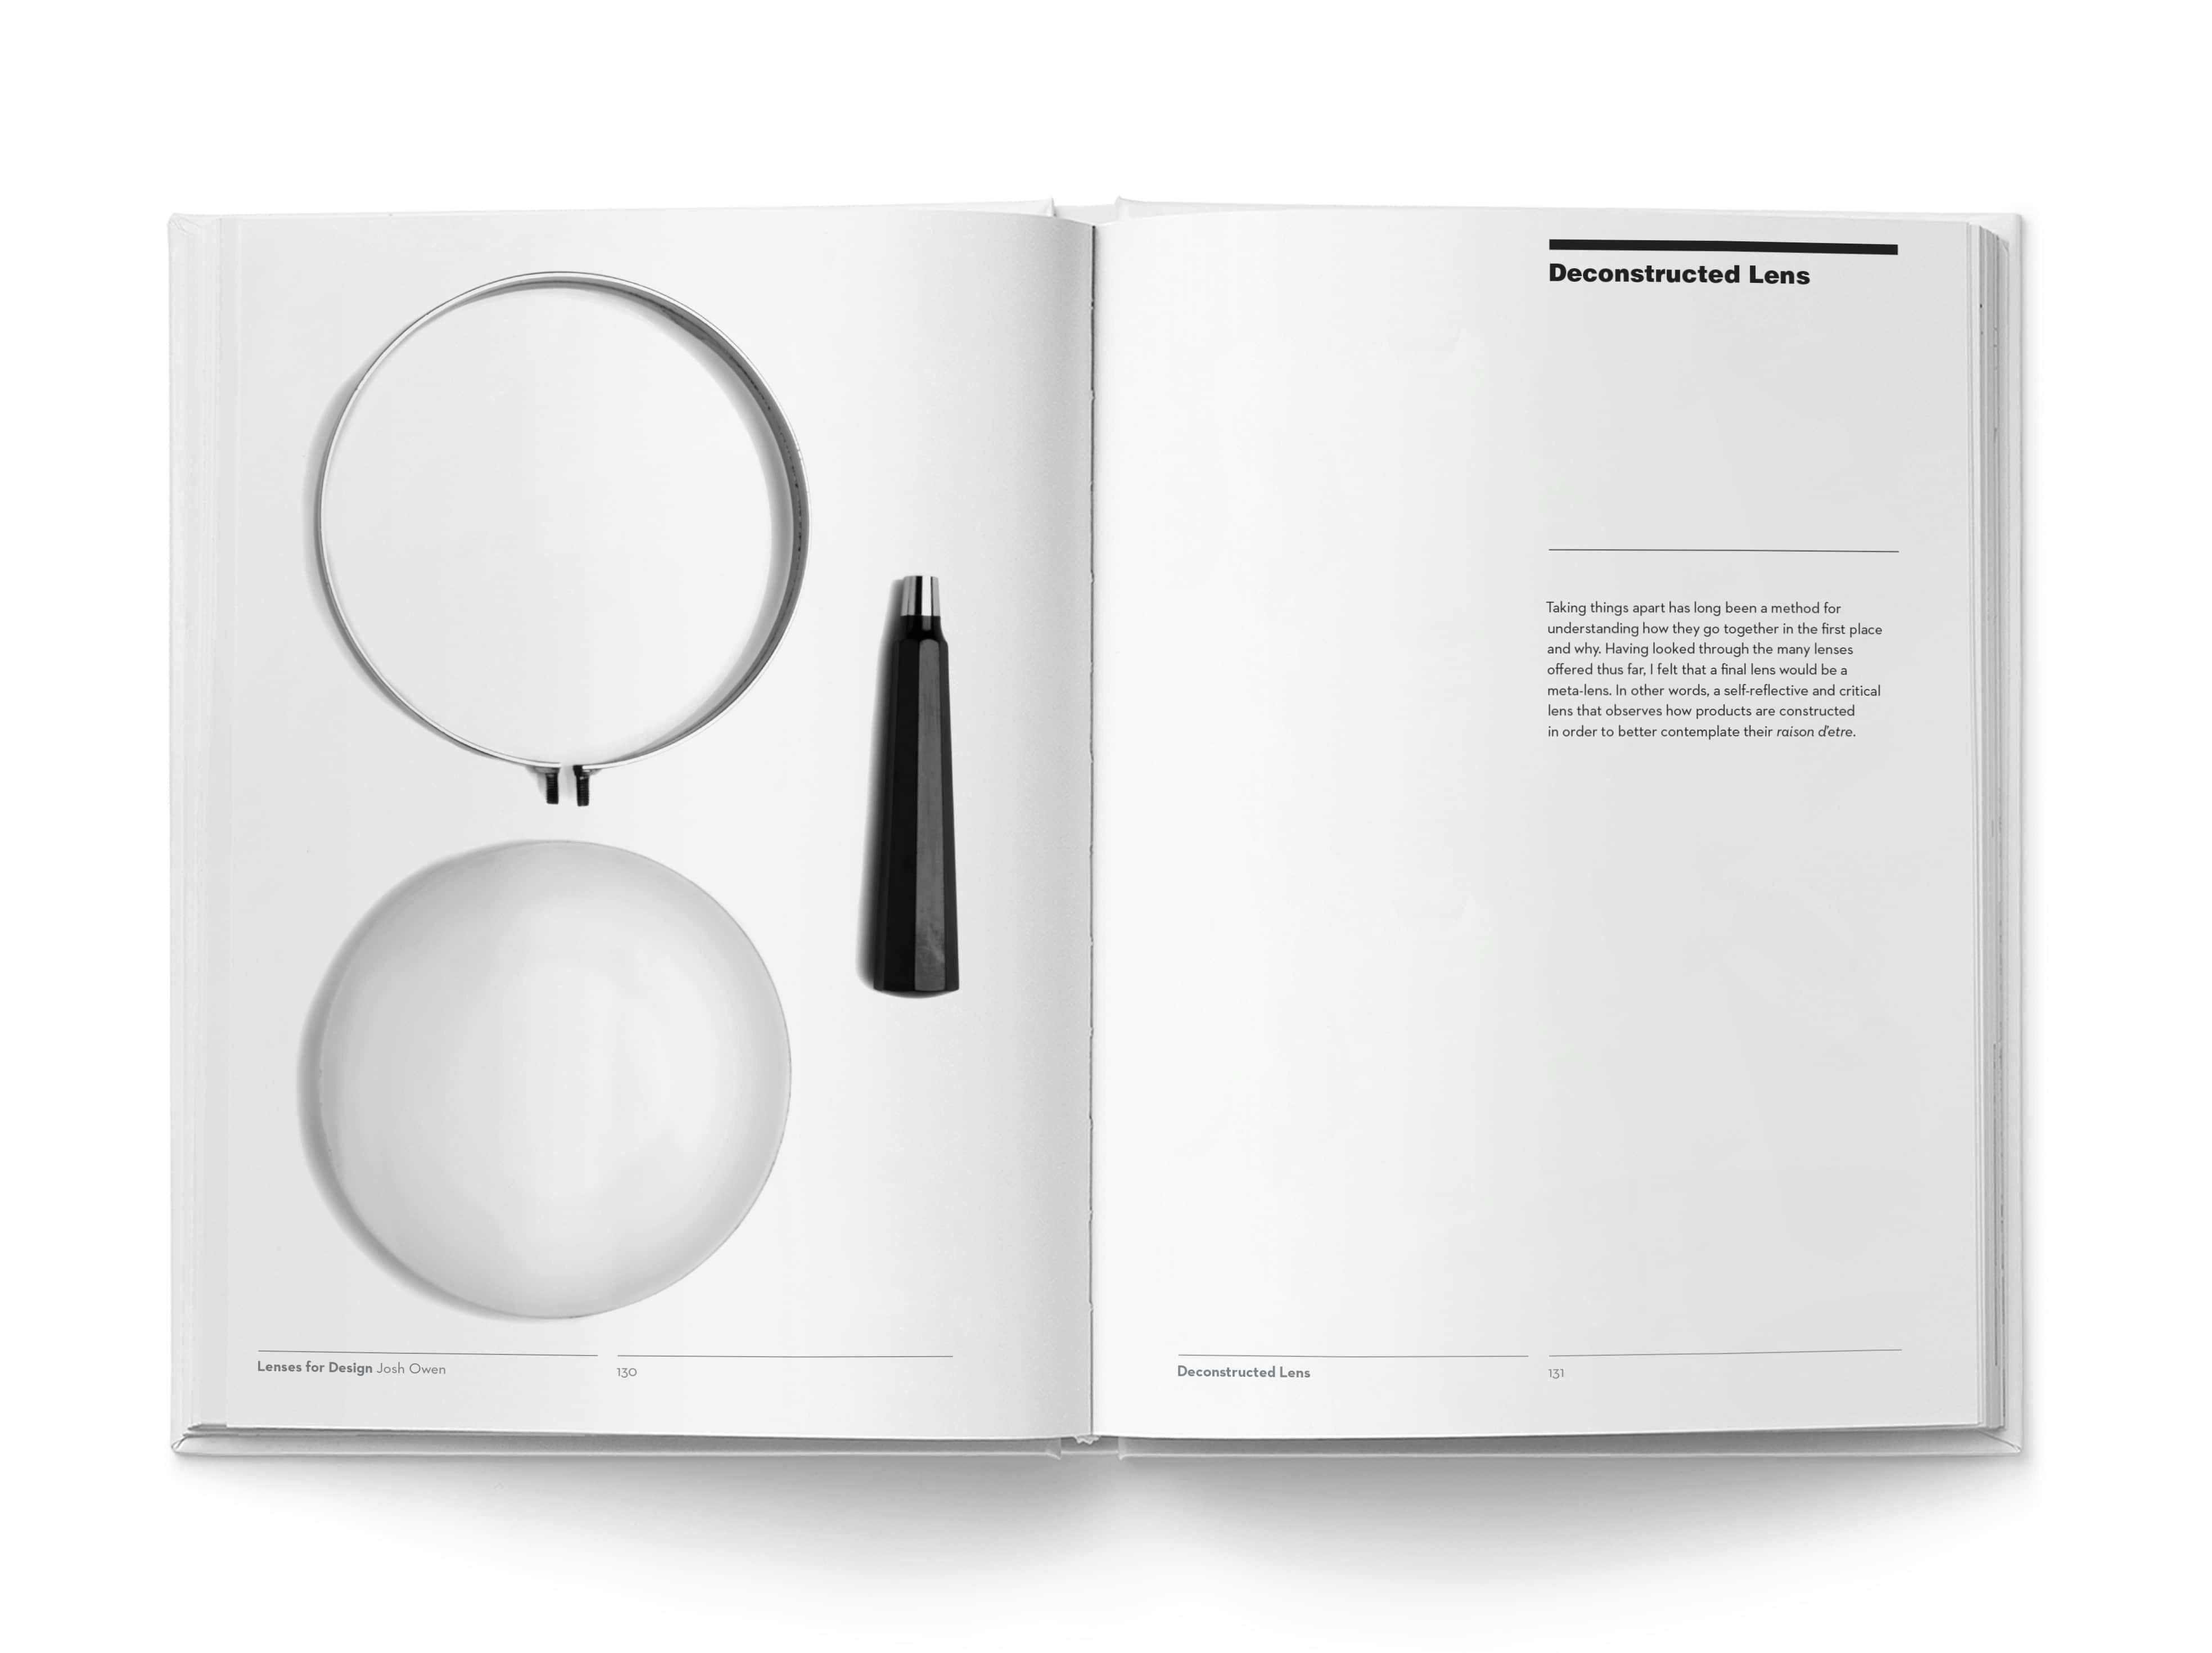 Lenses for Design Book